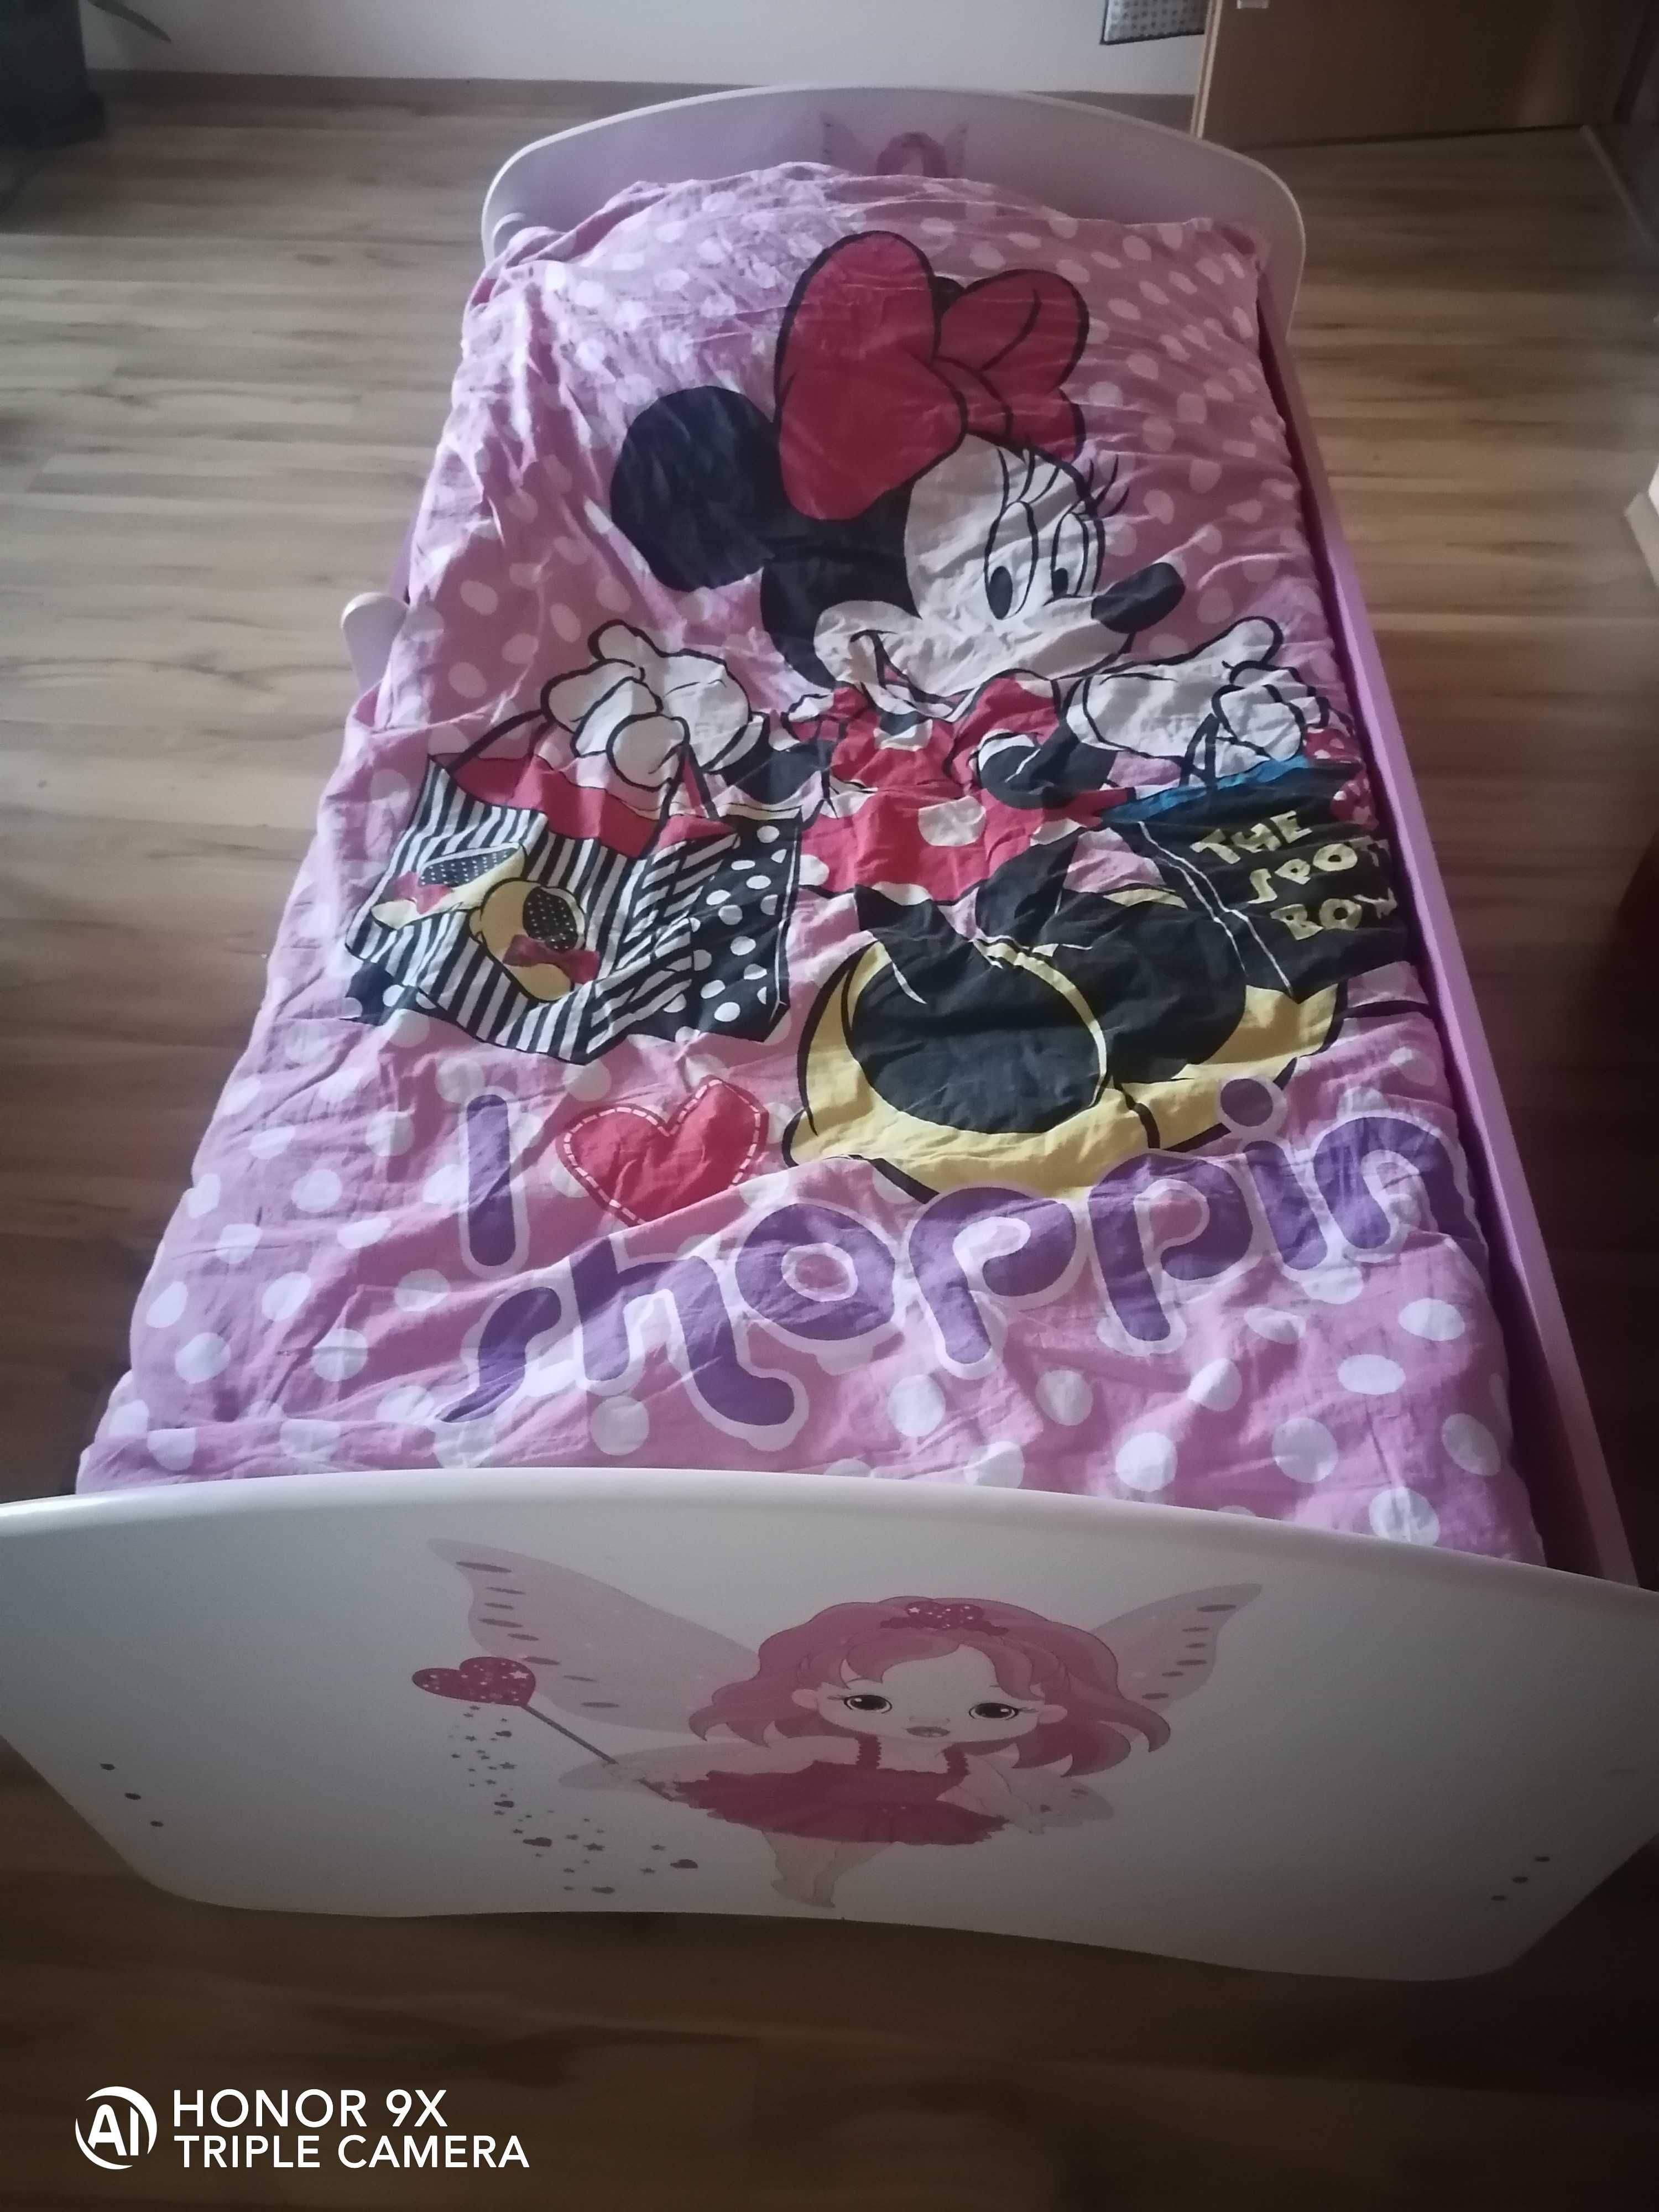 Łóżko dla dziewczynki